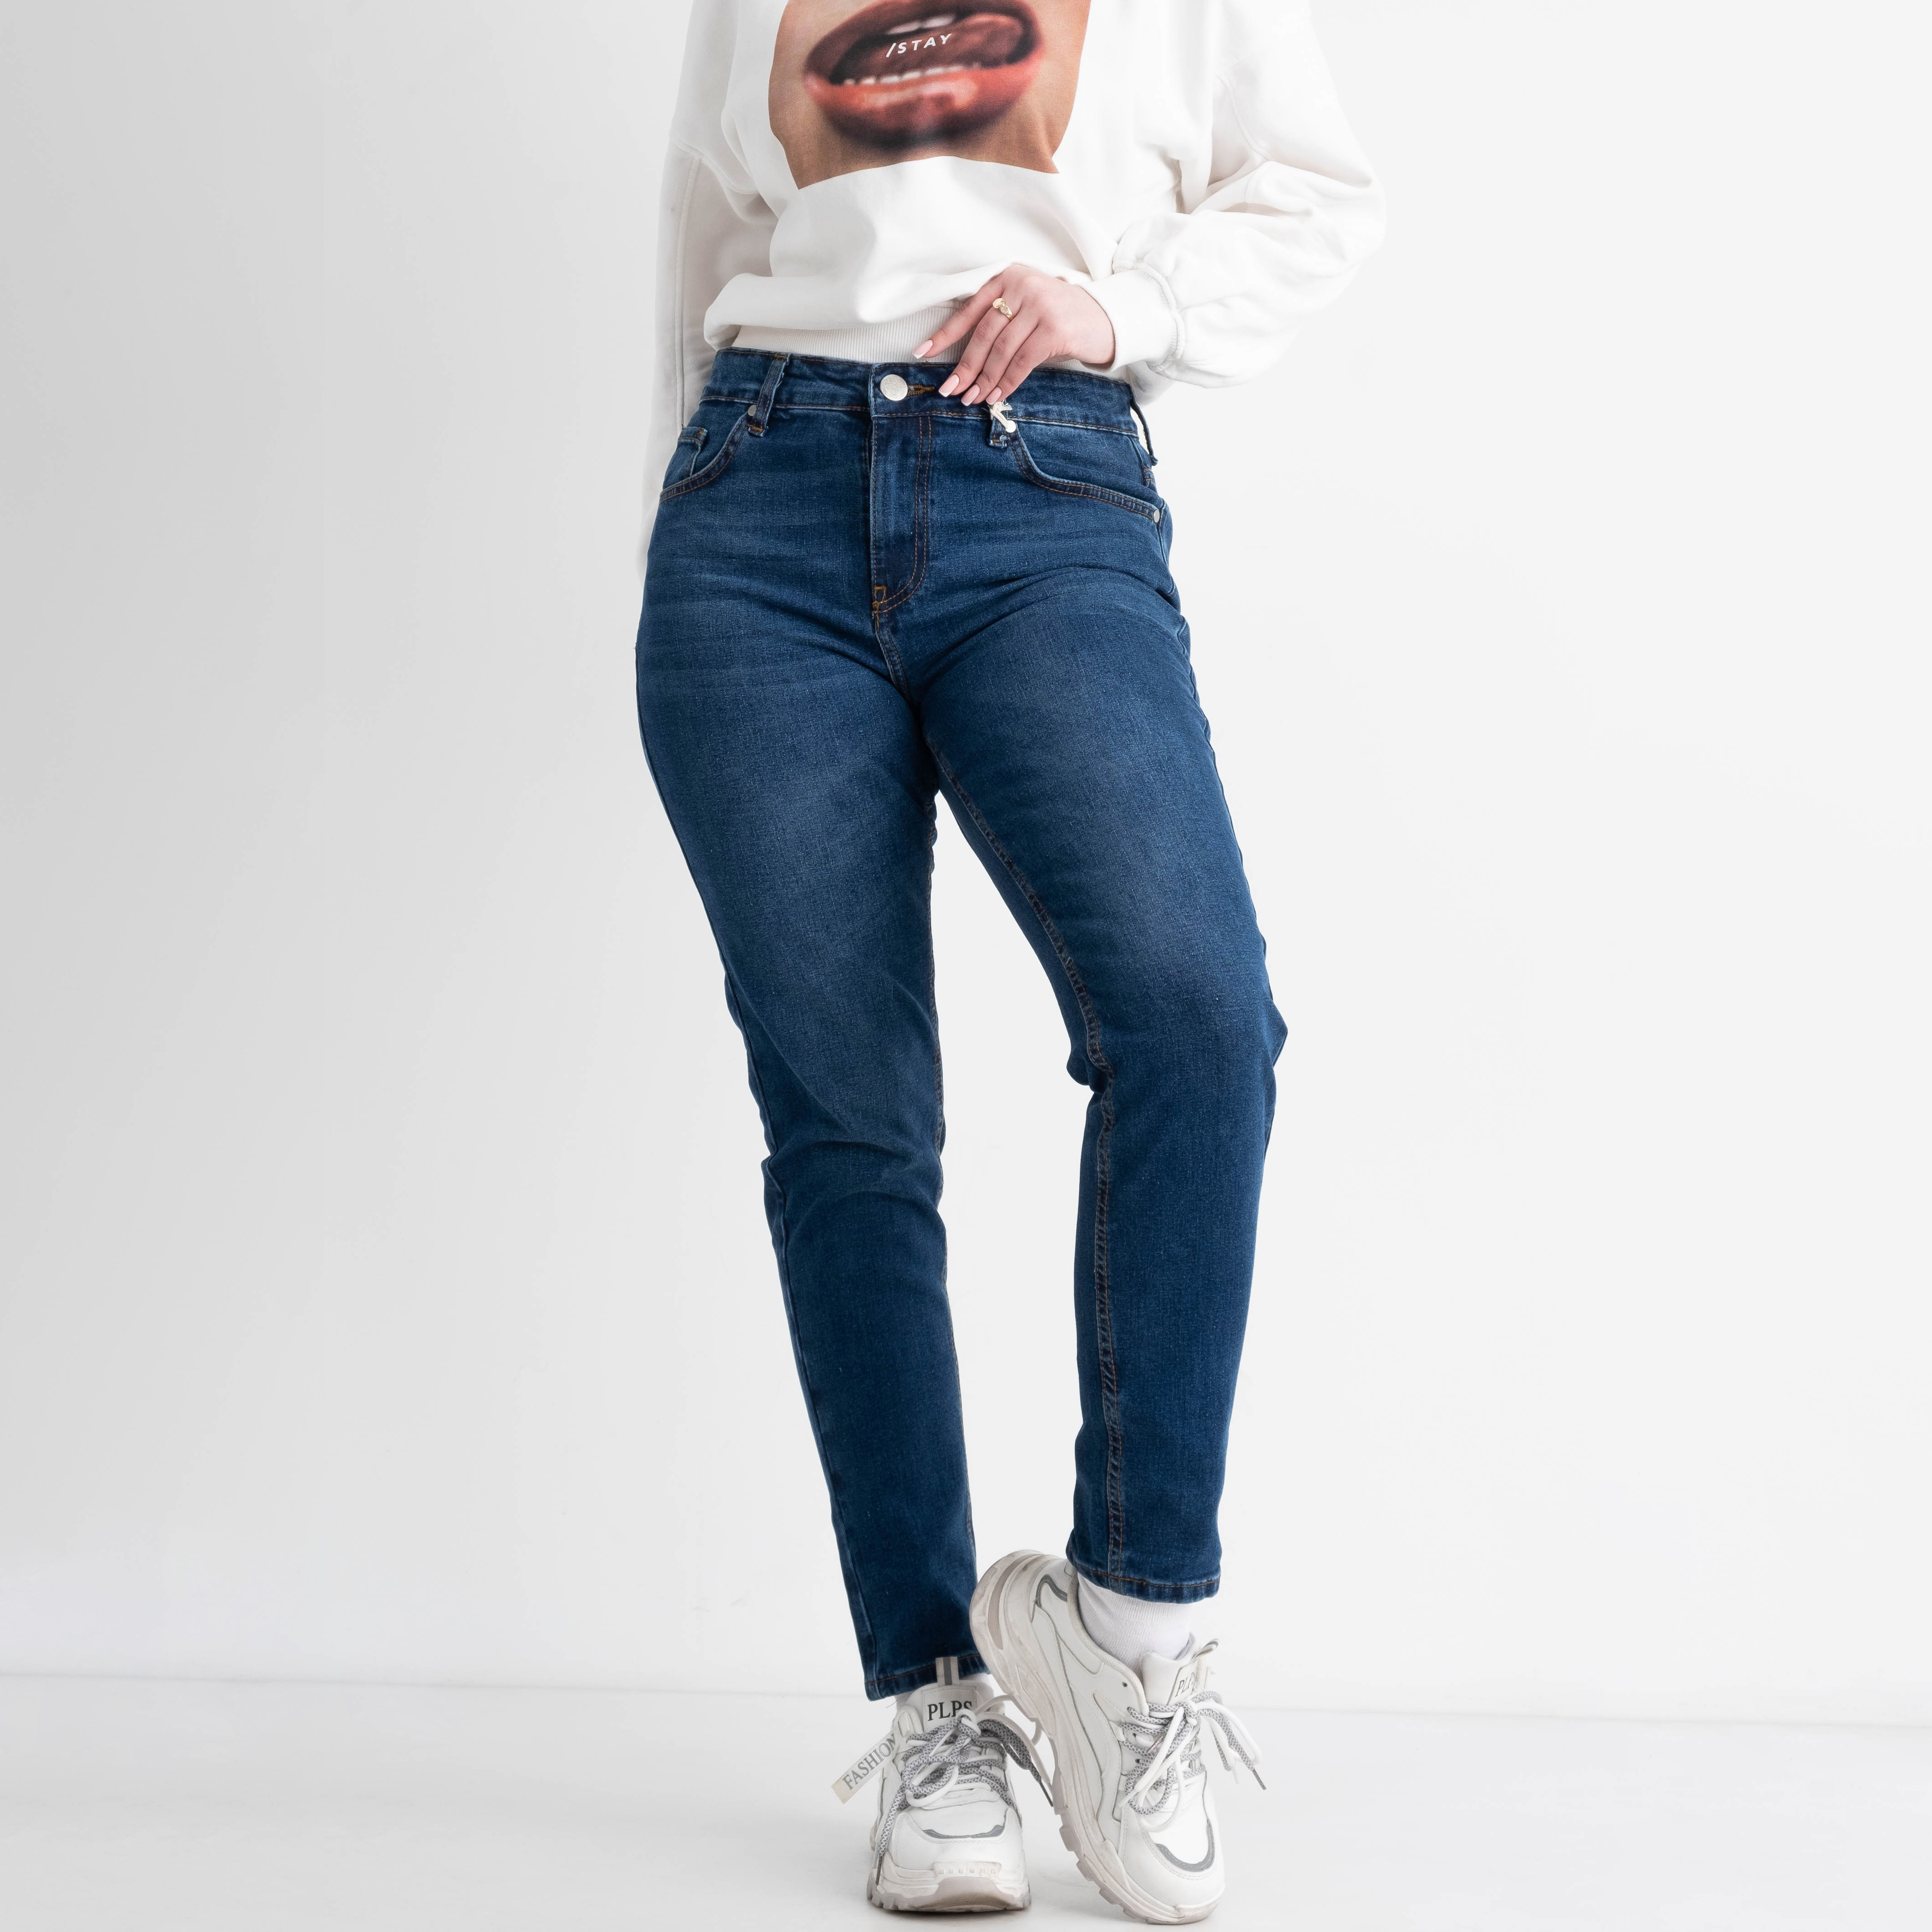 1993-30 Luxe Jeans ПОЛУБАТАЛЬНЫЕ джинсы женские синие стрейчевые ( 7 ед. размеры: 27.28.29.30/3.31)